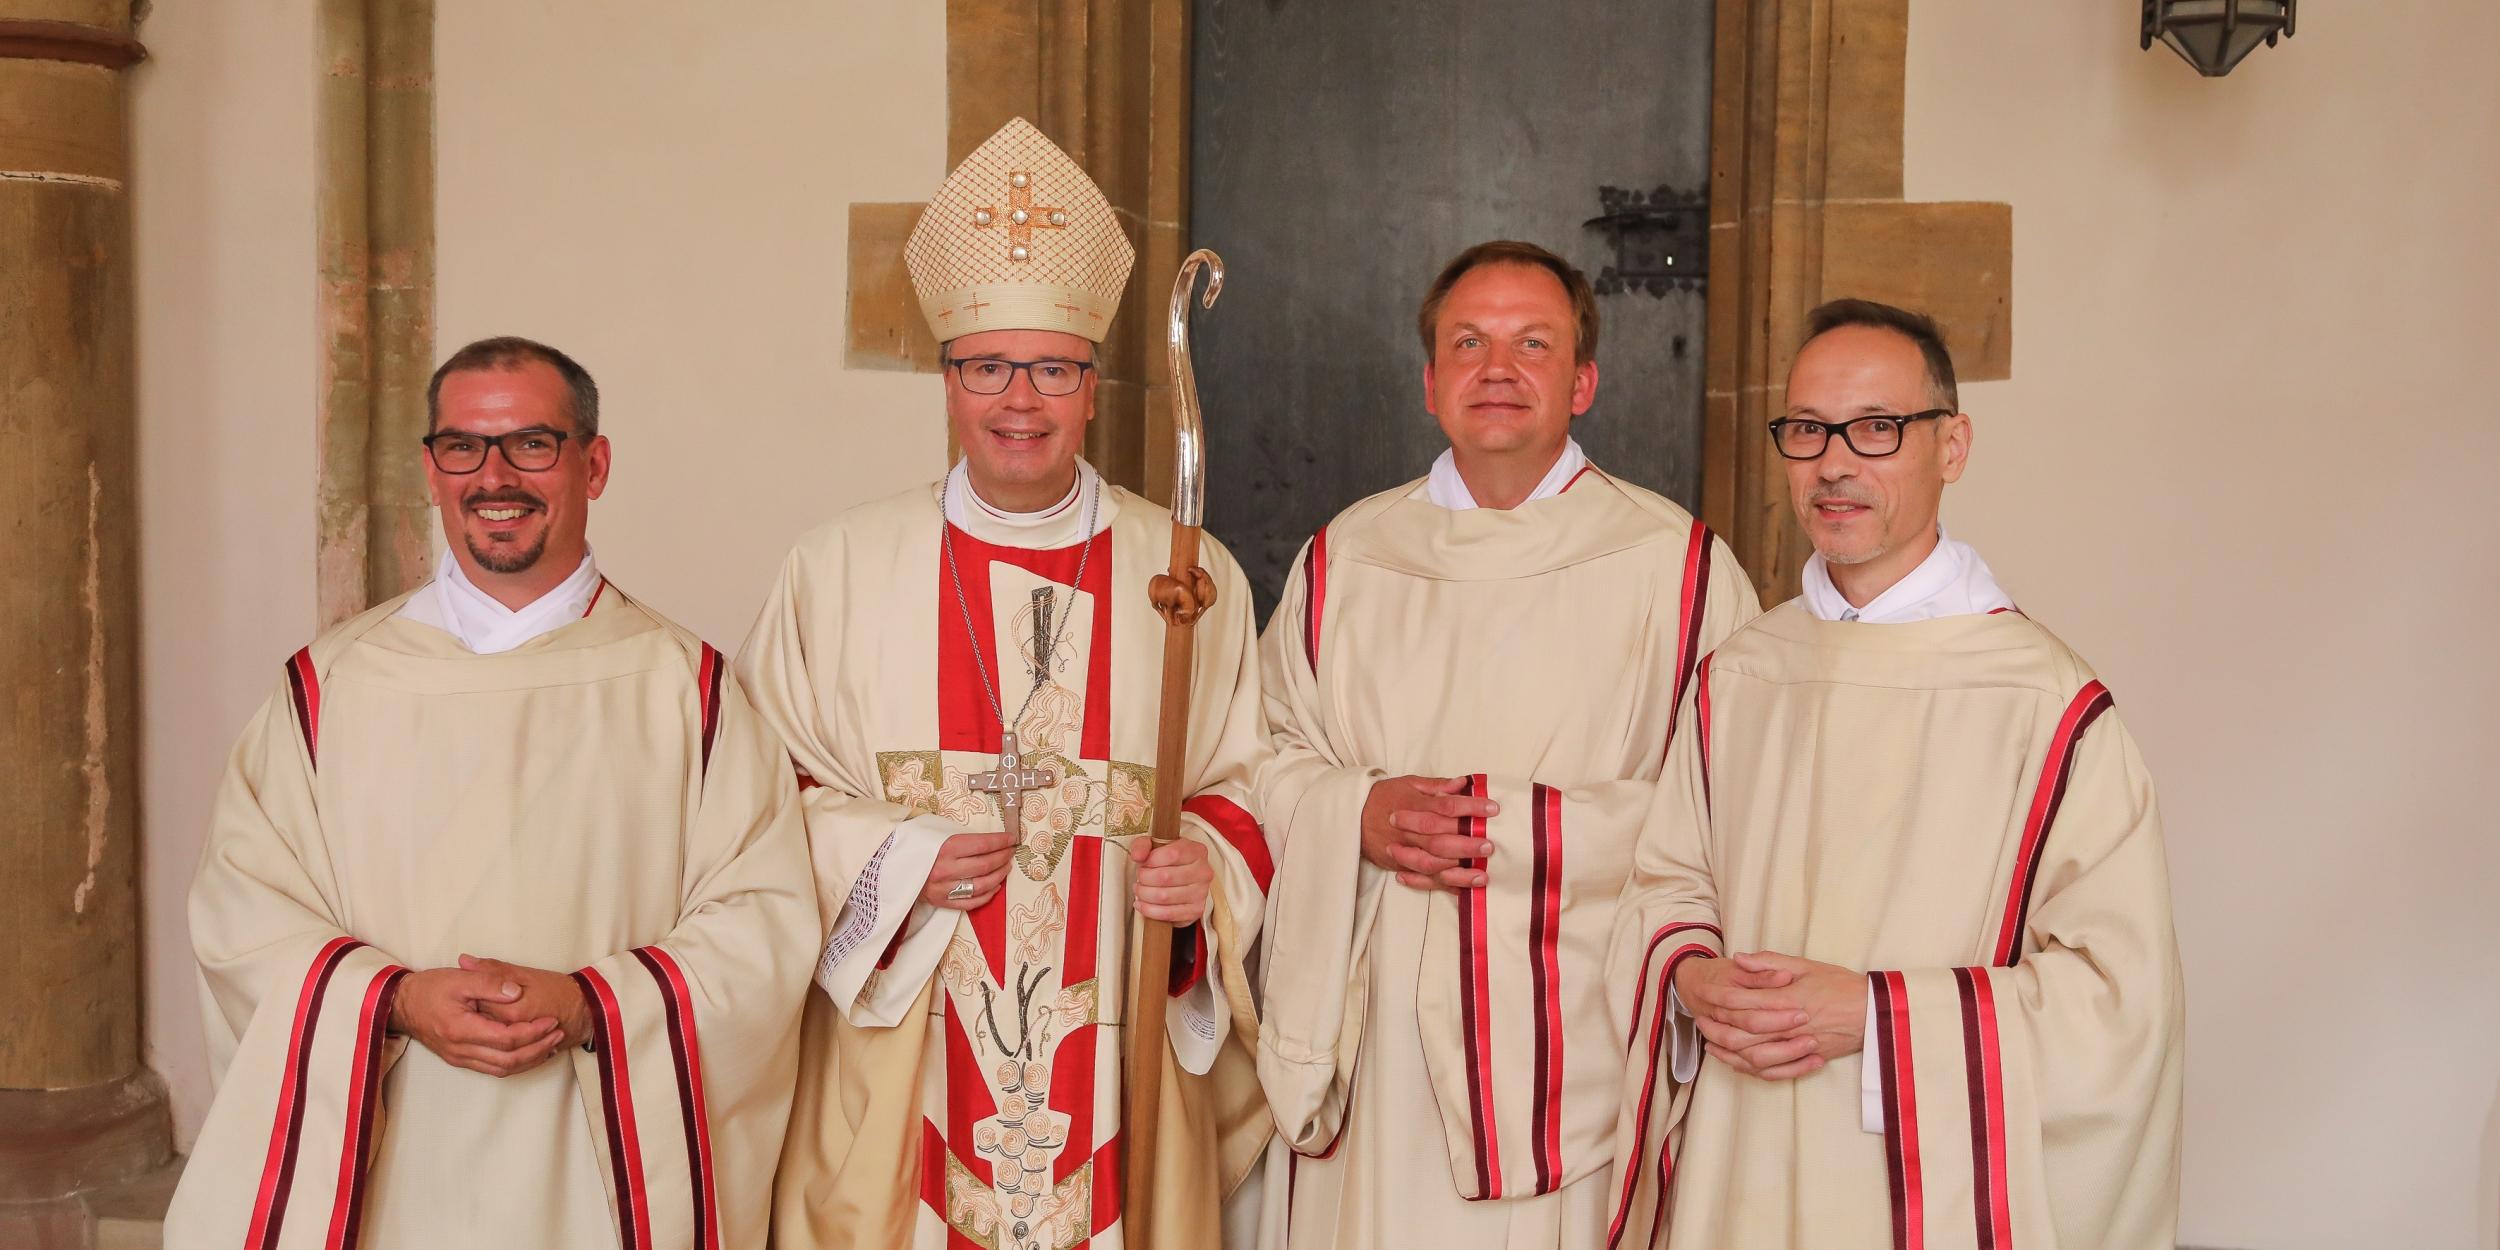 Bischof Ackermann mit den neuen Diakonen Ruhe, Hoffmann und Wilbertz (vlnr)